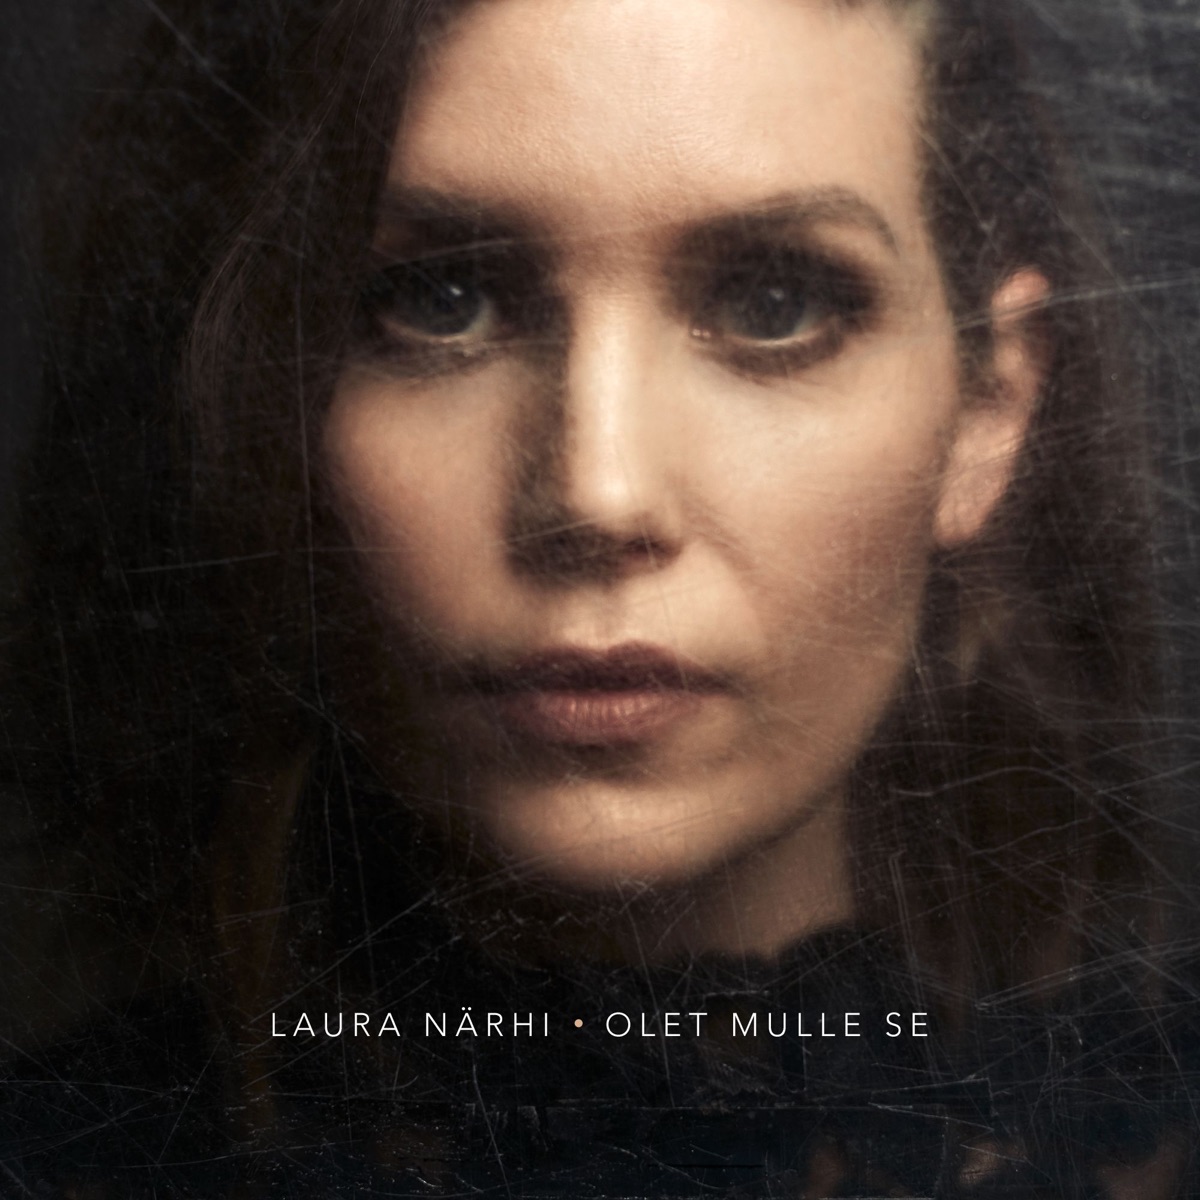 Hetken Tie On Kevyt - Single - Album by Laura Närhi - Apple Music